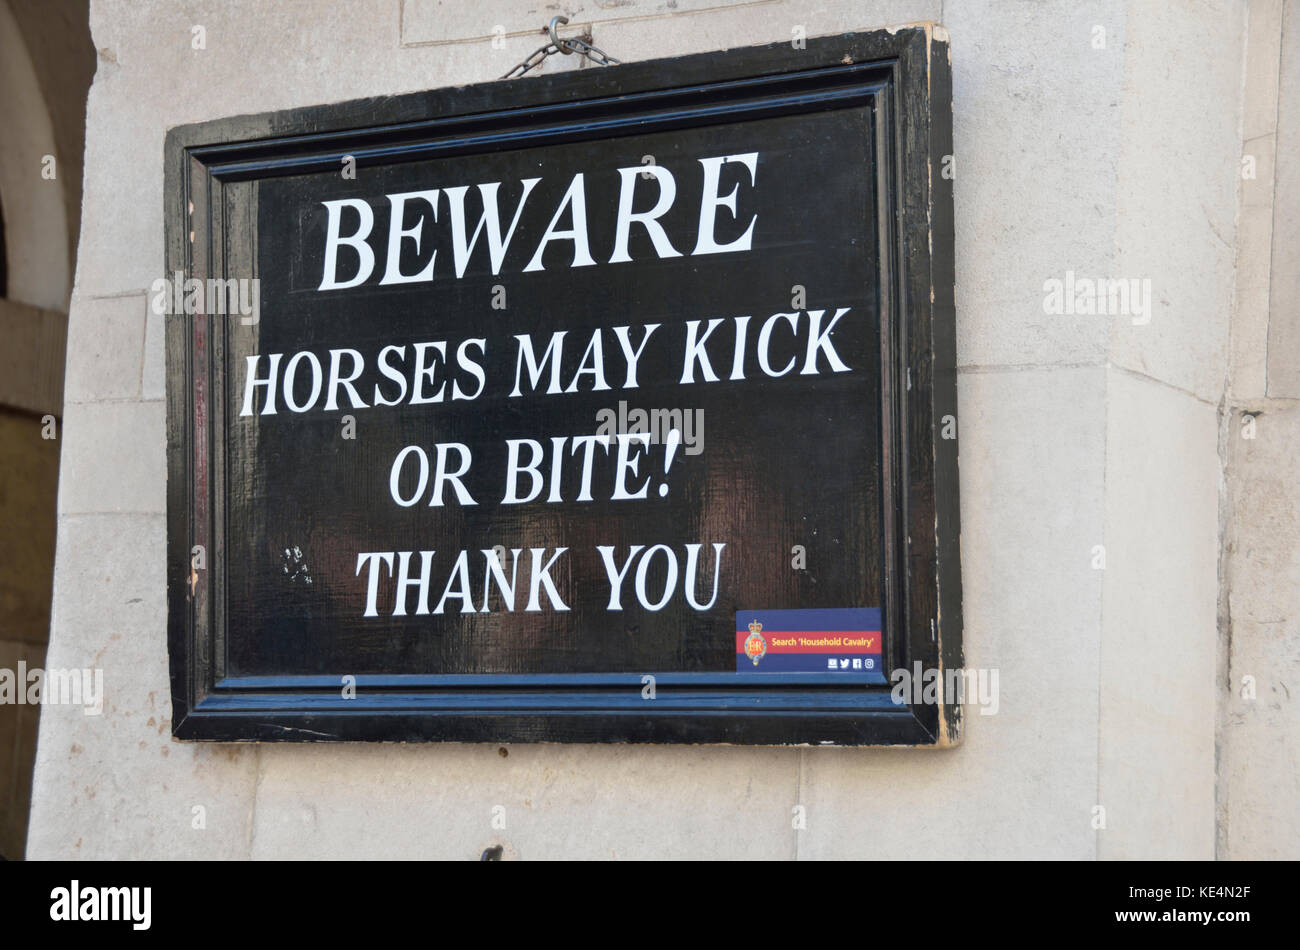 ’Beware horses may kick or bite’ warning sign on a wall. Stock Photo